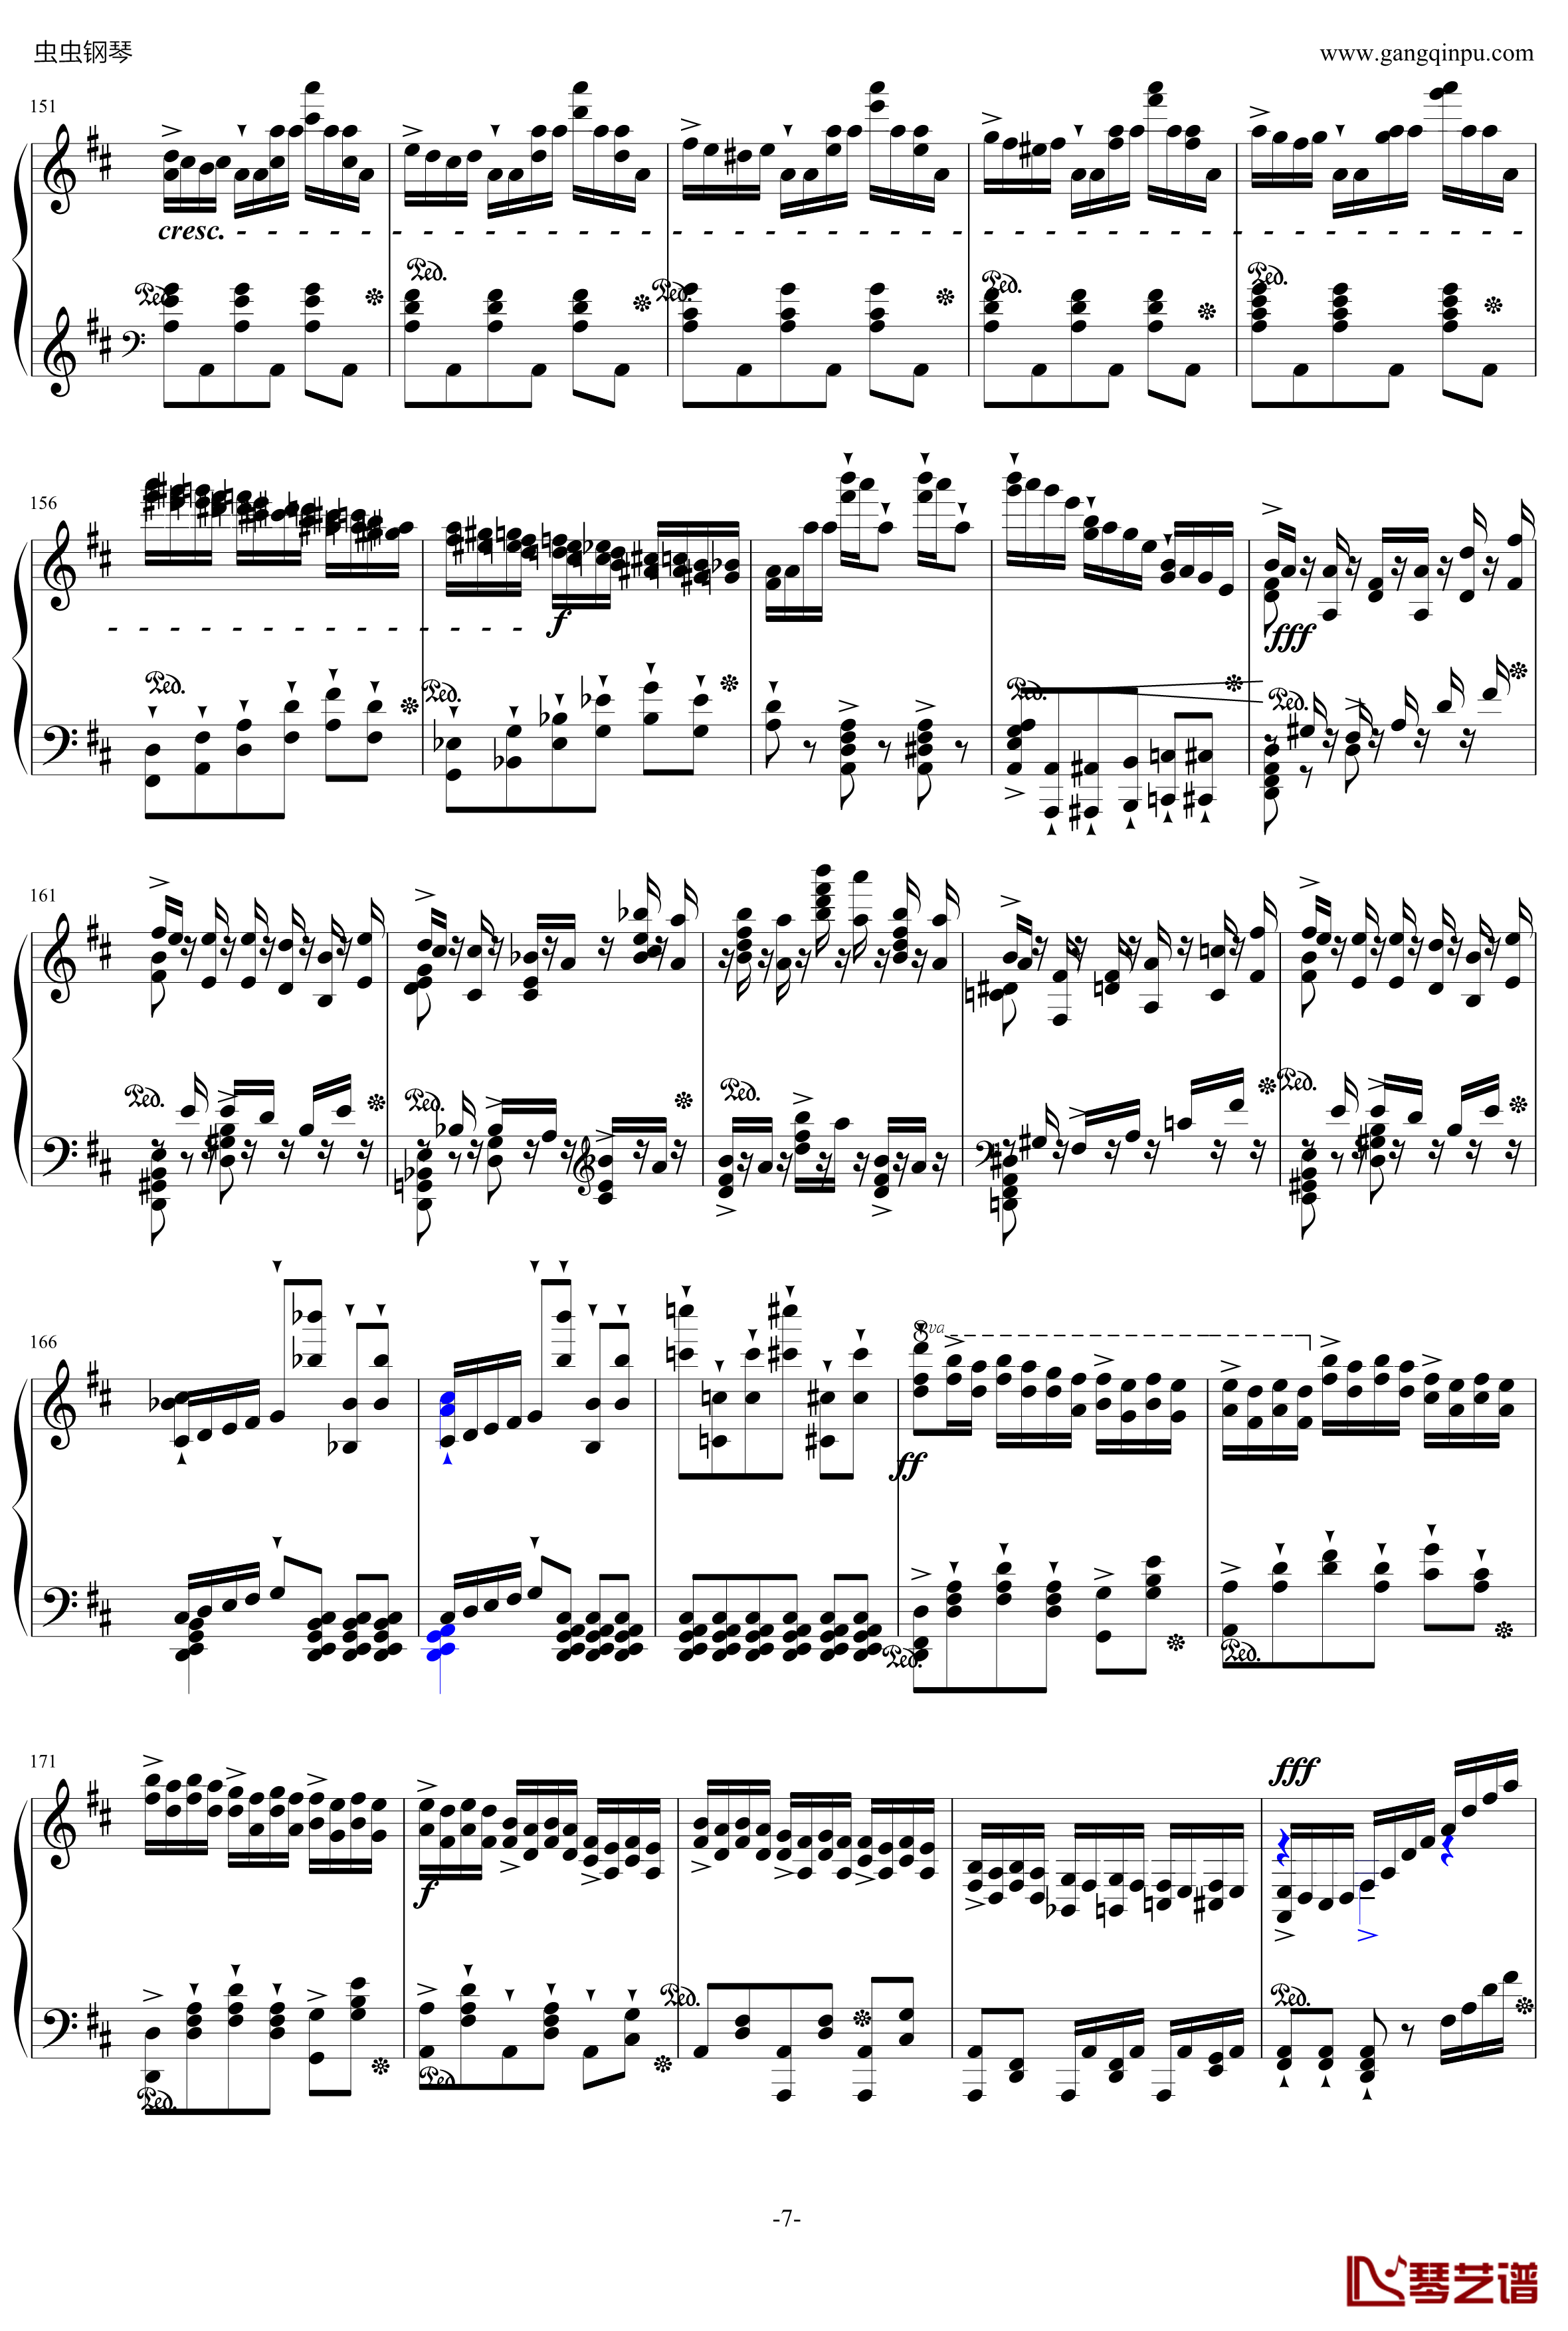 贝里尼清教徒引子和波兰舞曲S.391钢琴谱-李斯特7